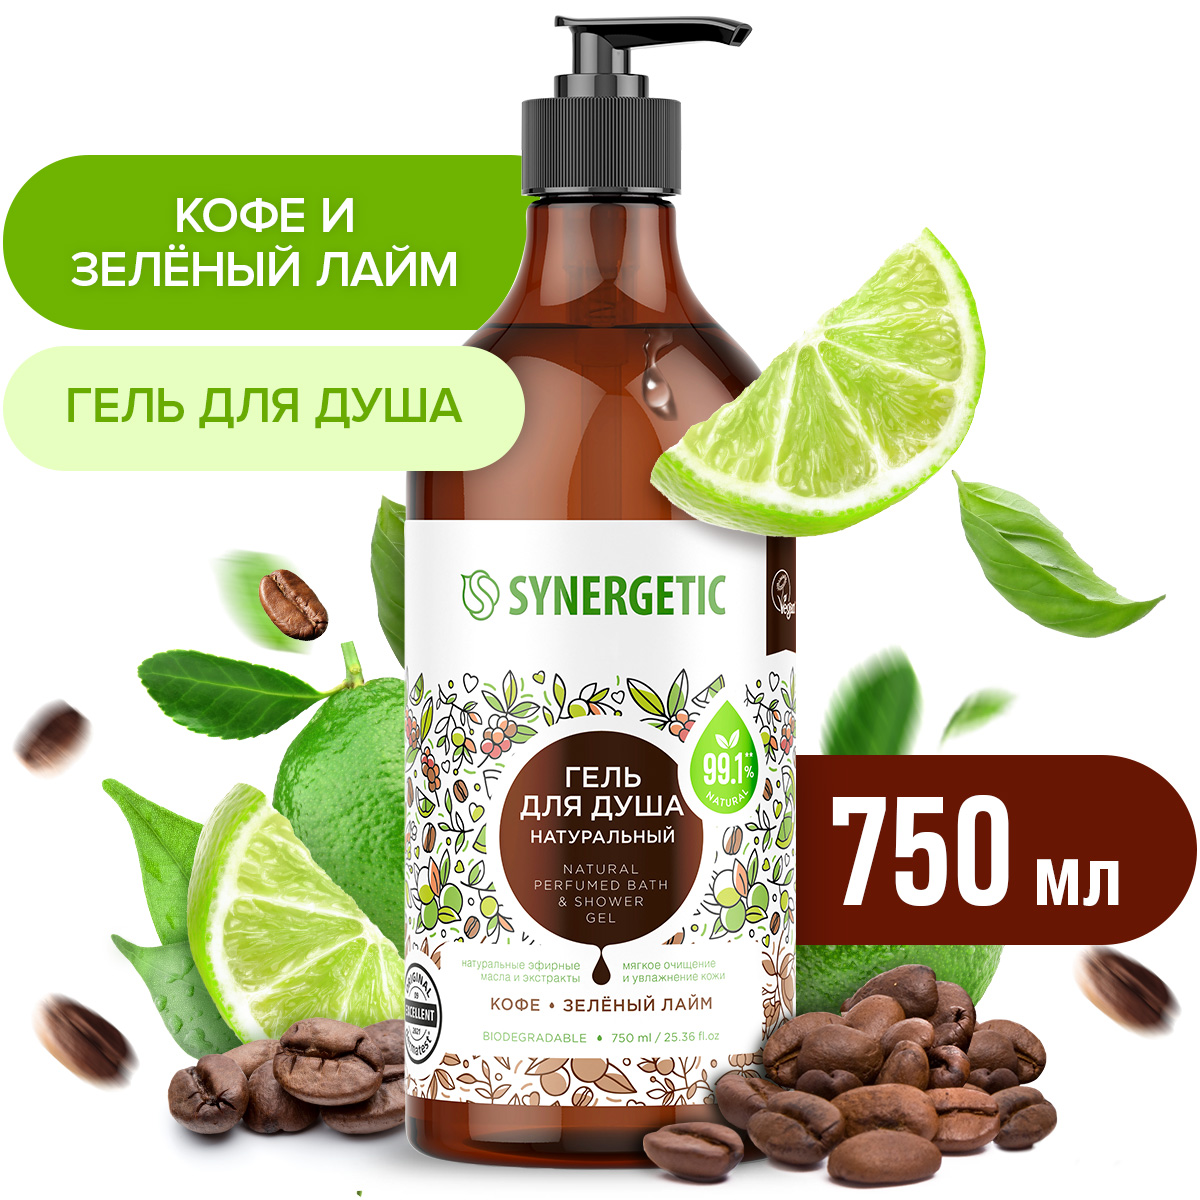 Гель для душа Synergetic натуральный, гипоаллергенный, Кофе и зеленый лайм 750 мл synergetic натуральный кофейный скраб для тела кофе и зеленый лайм 300 0